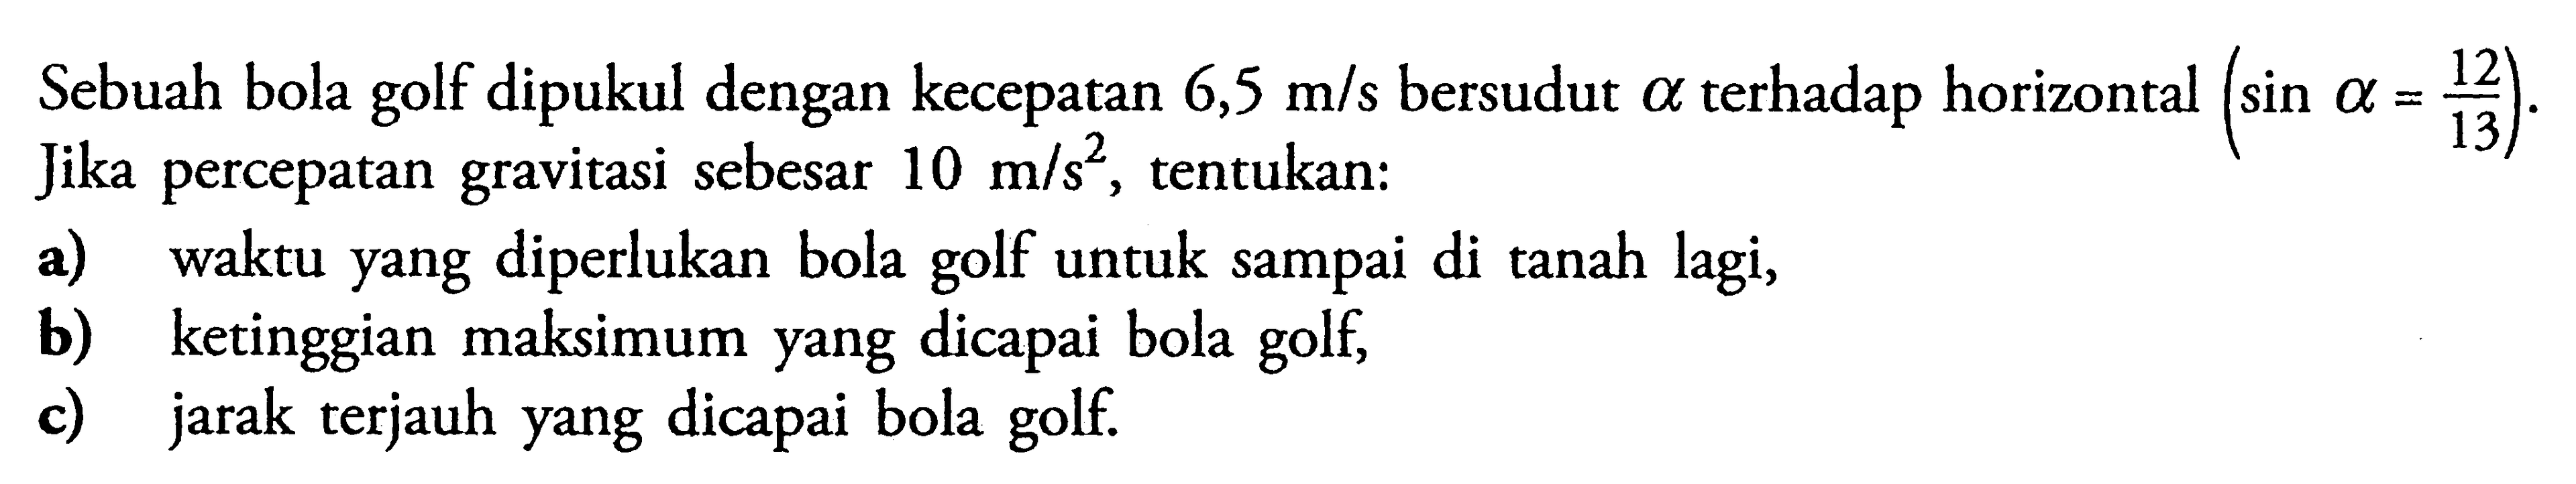 Sebuah bola golf dipukul dengan kecepatan  6,5 m/s  bersudut  a  terhadap horizontal  (sin a=12/13) . Jika percepatan gravitasi sebesar  10 m/s^2 , tentukan:a) waktu yang diperlukan bola golf untuk sampai di tanah lagi,b) ketinggian maksimum yang dicapai bola golf,c) jarak terjauh yang dicapai bola golf.